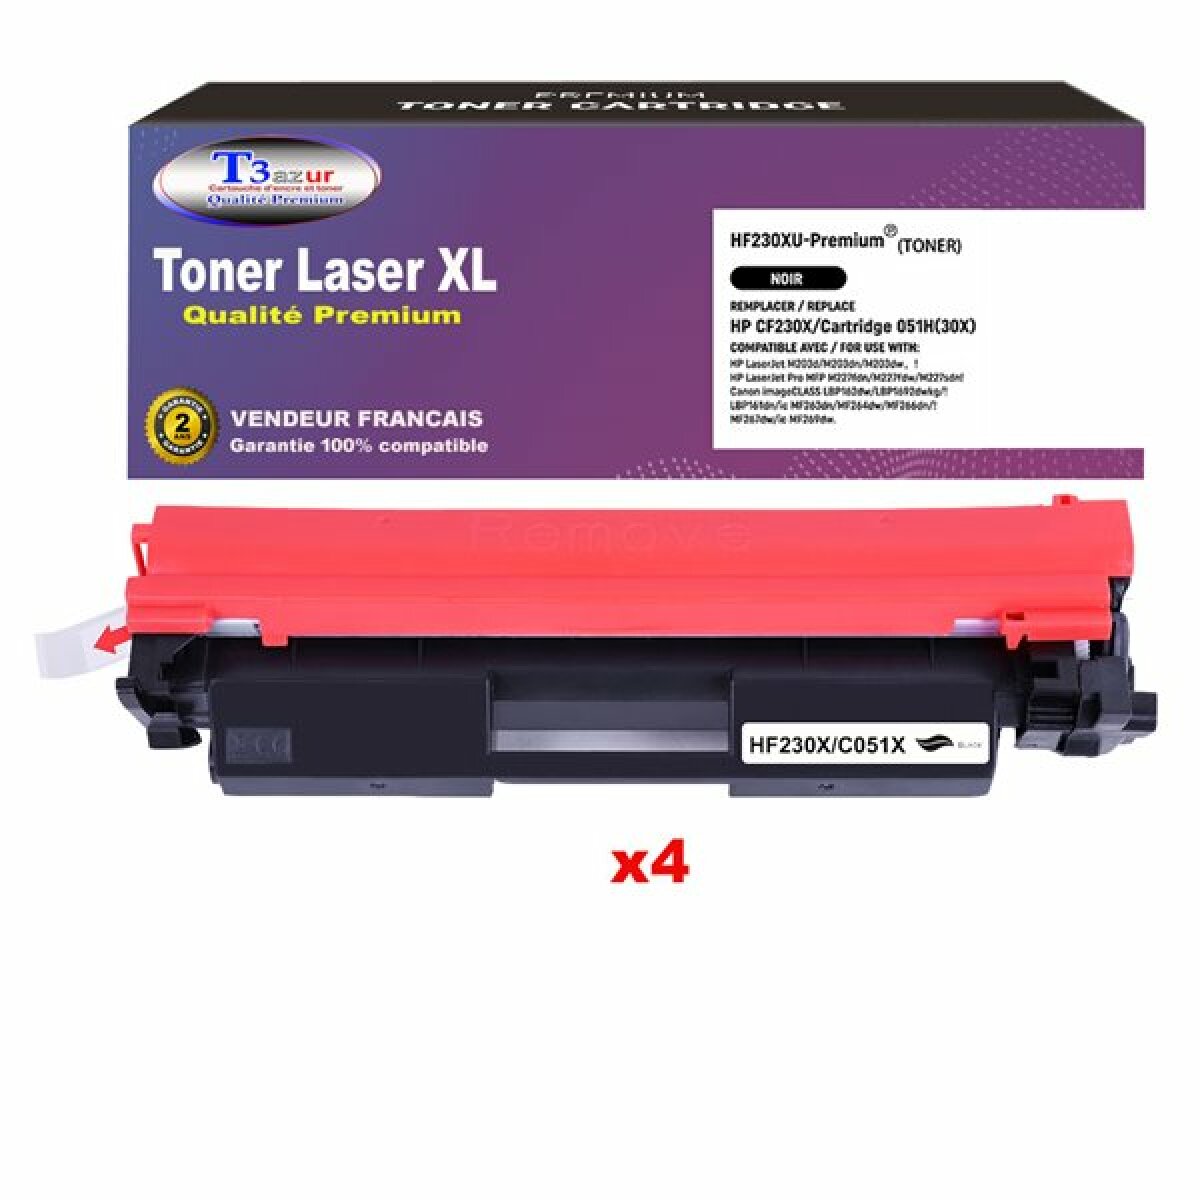 T3AZUR - Lot de 4 Toners Laser compatibles avec HP LaserJet Pro MFP M227, M227fdn, M227fdw, M227sdn remplace CF230X (30X) Noir